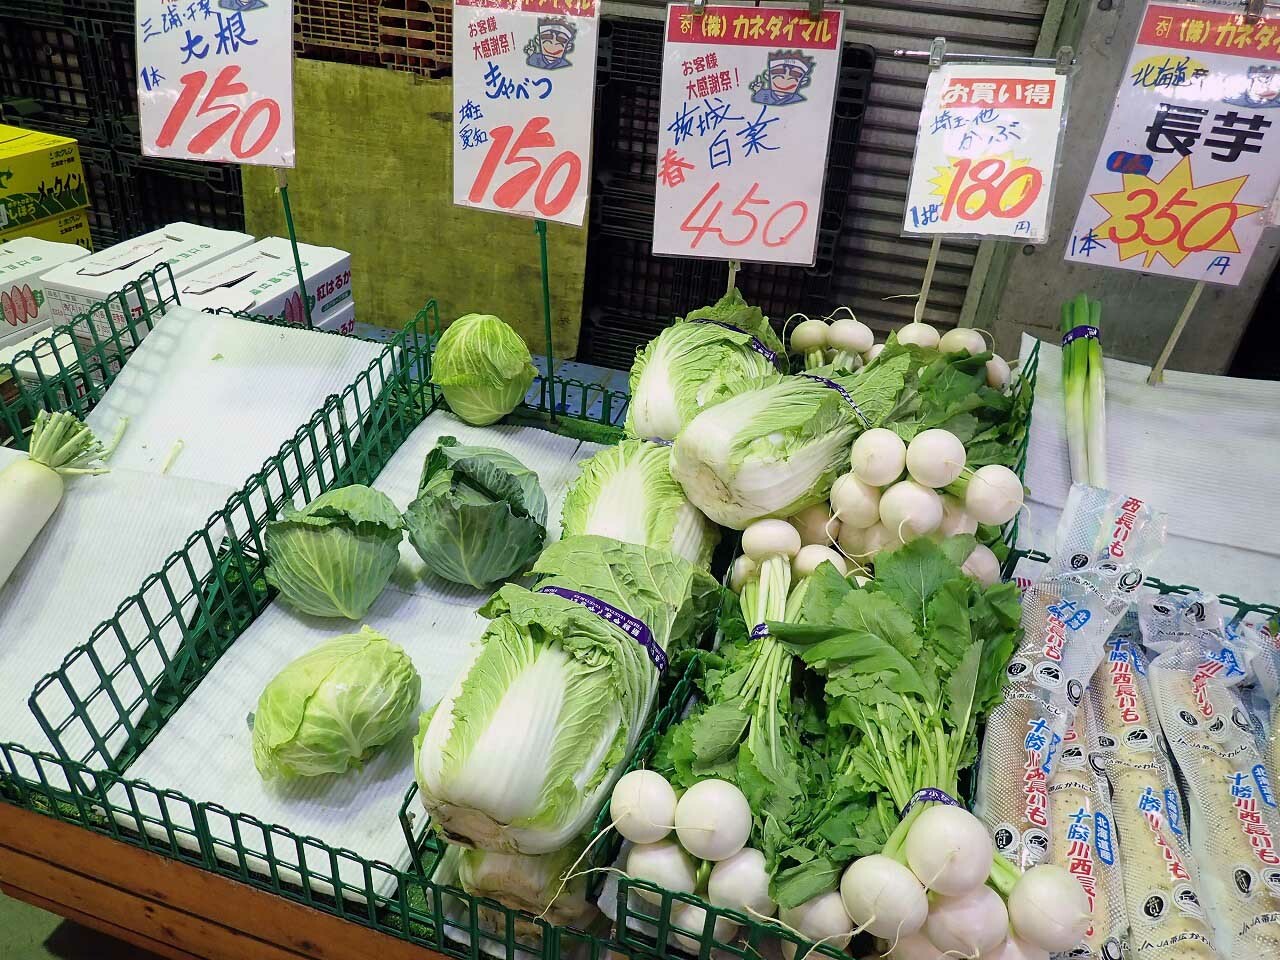 全国各地の新鮮な野菜が販売されています